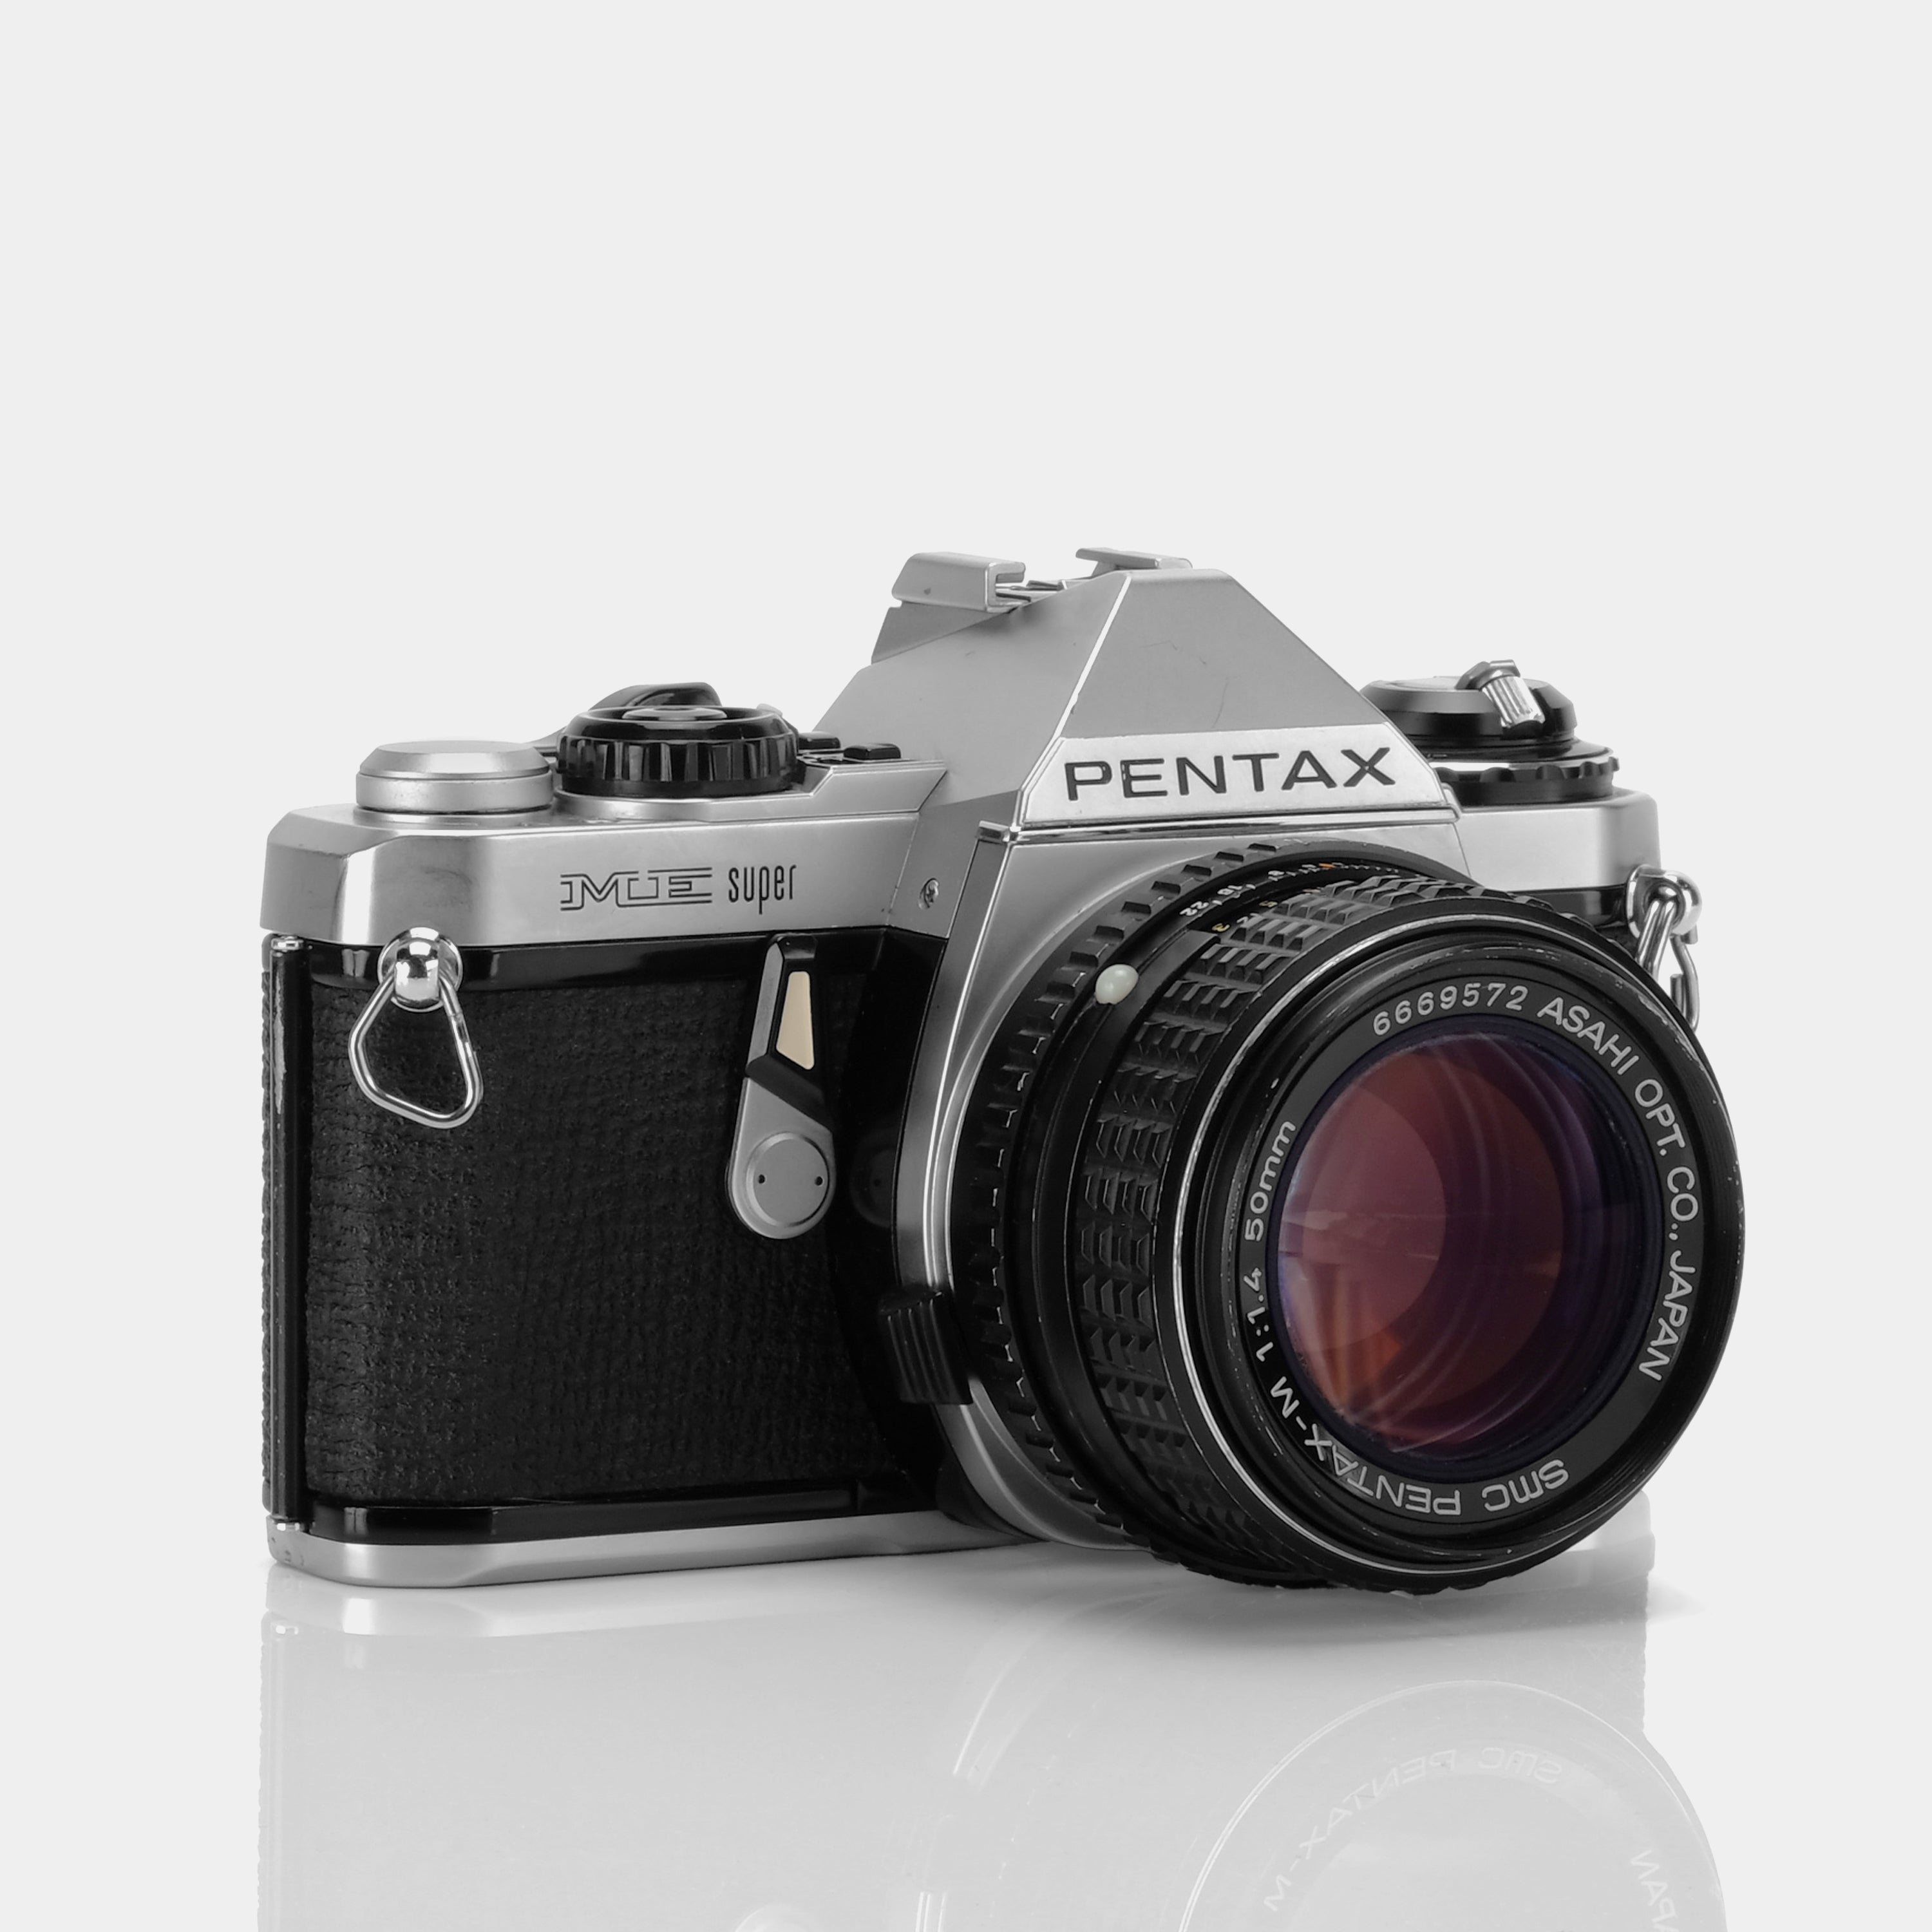 Pentax ME Super 35mm SLR Film Camera